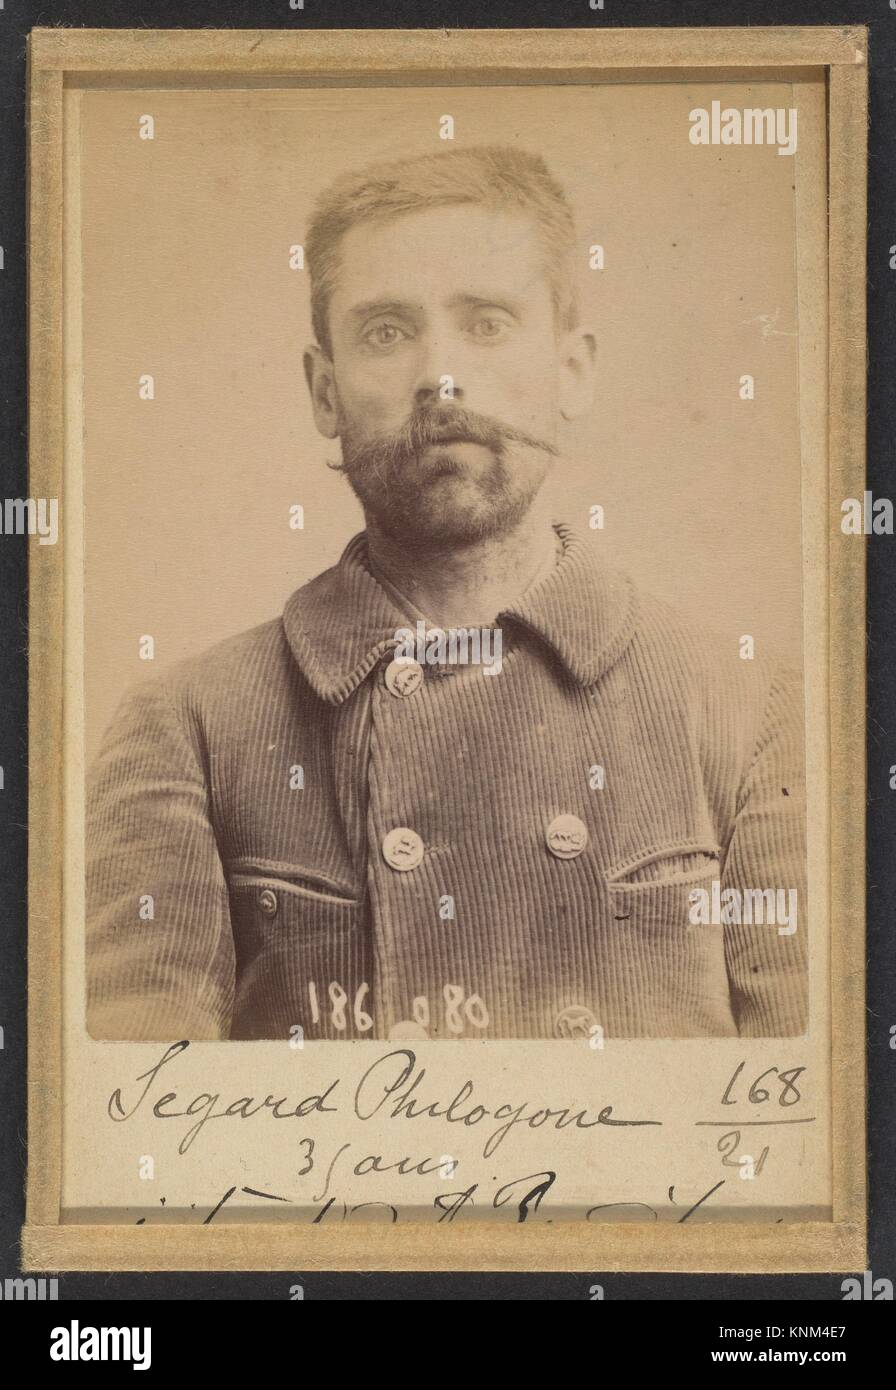 Segard. Philogone. 44 ans (35 ans inscrit sur la photo), né à Salond (Somme). Journaliste. Anarchiste. Artist: Alphonse Bertillon (French, Stock Photo